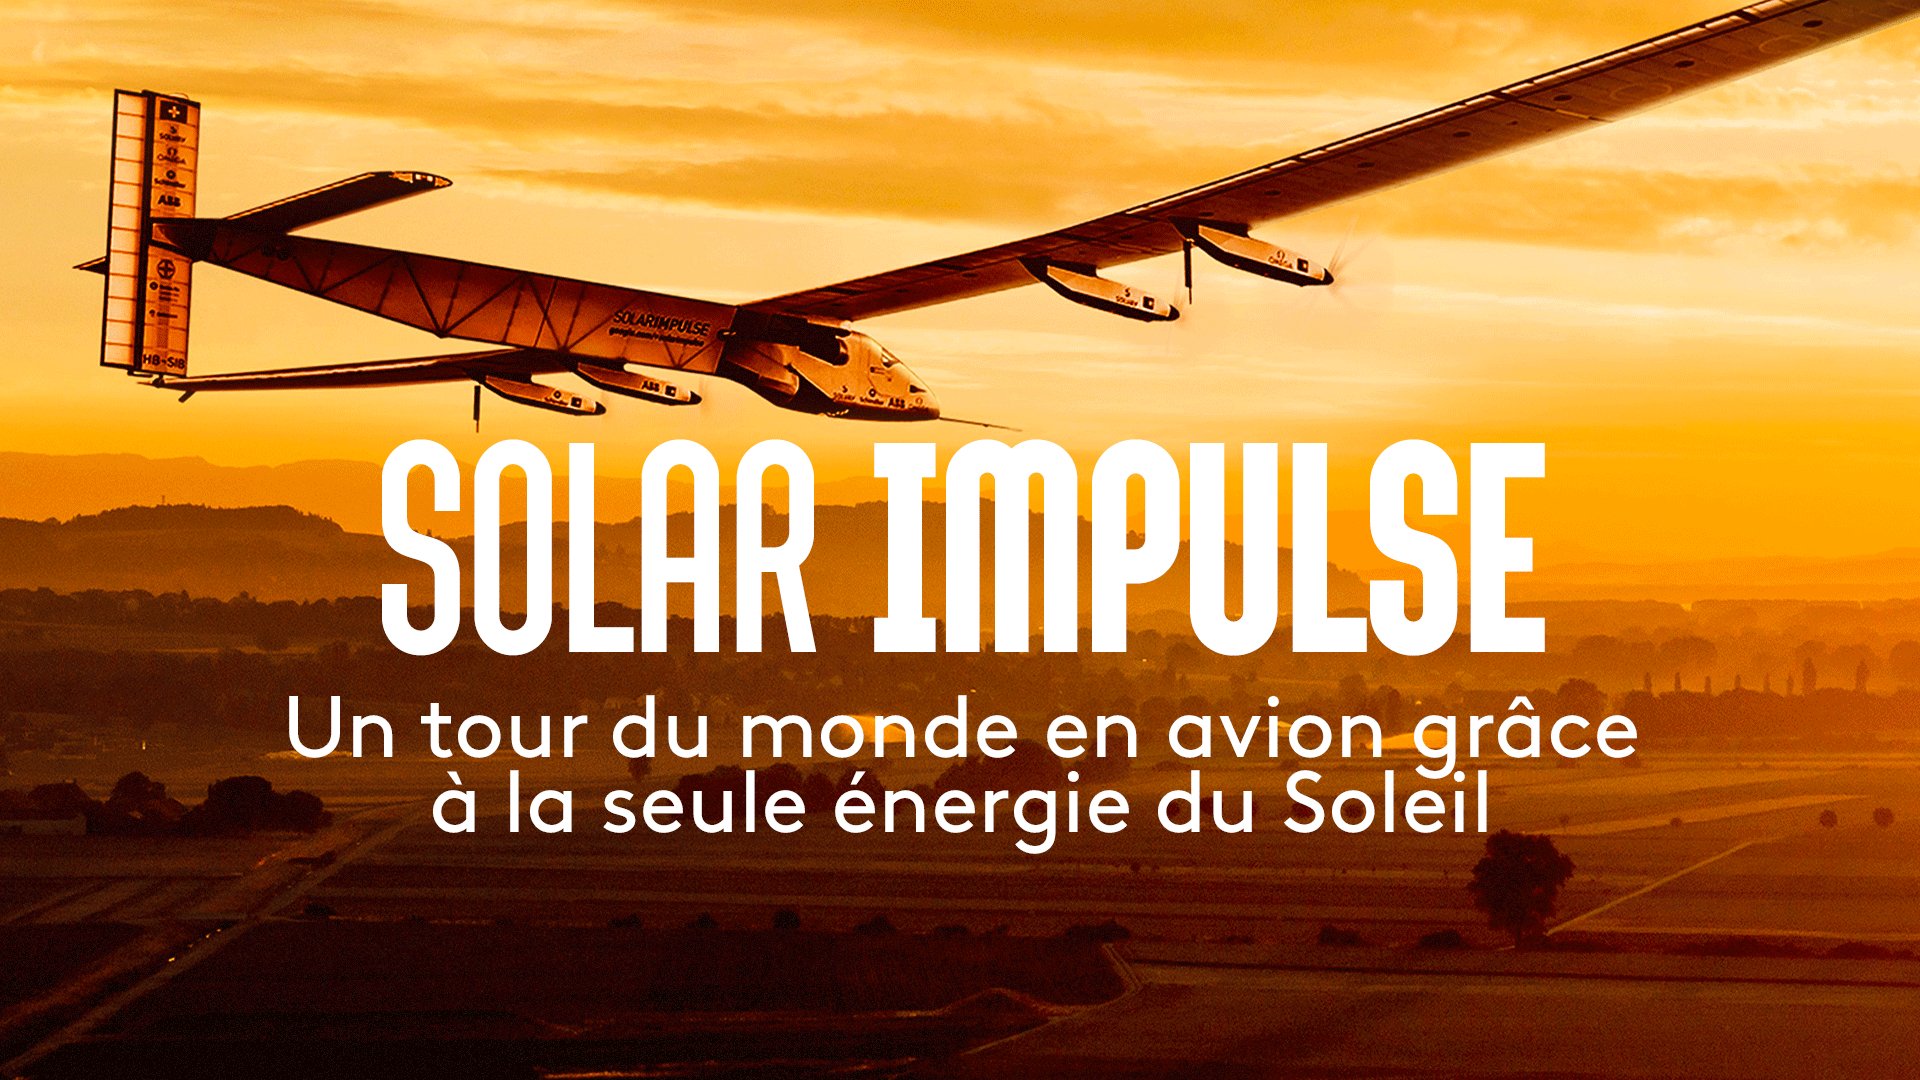 Solar Impulse, l'impossible tour du monde - Solar Impulse - documentaire | France tv